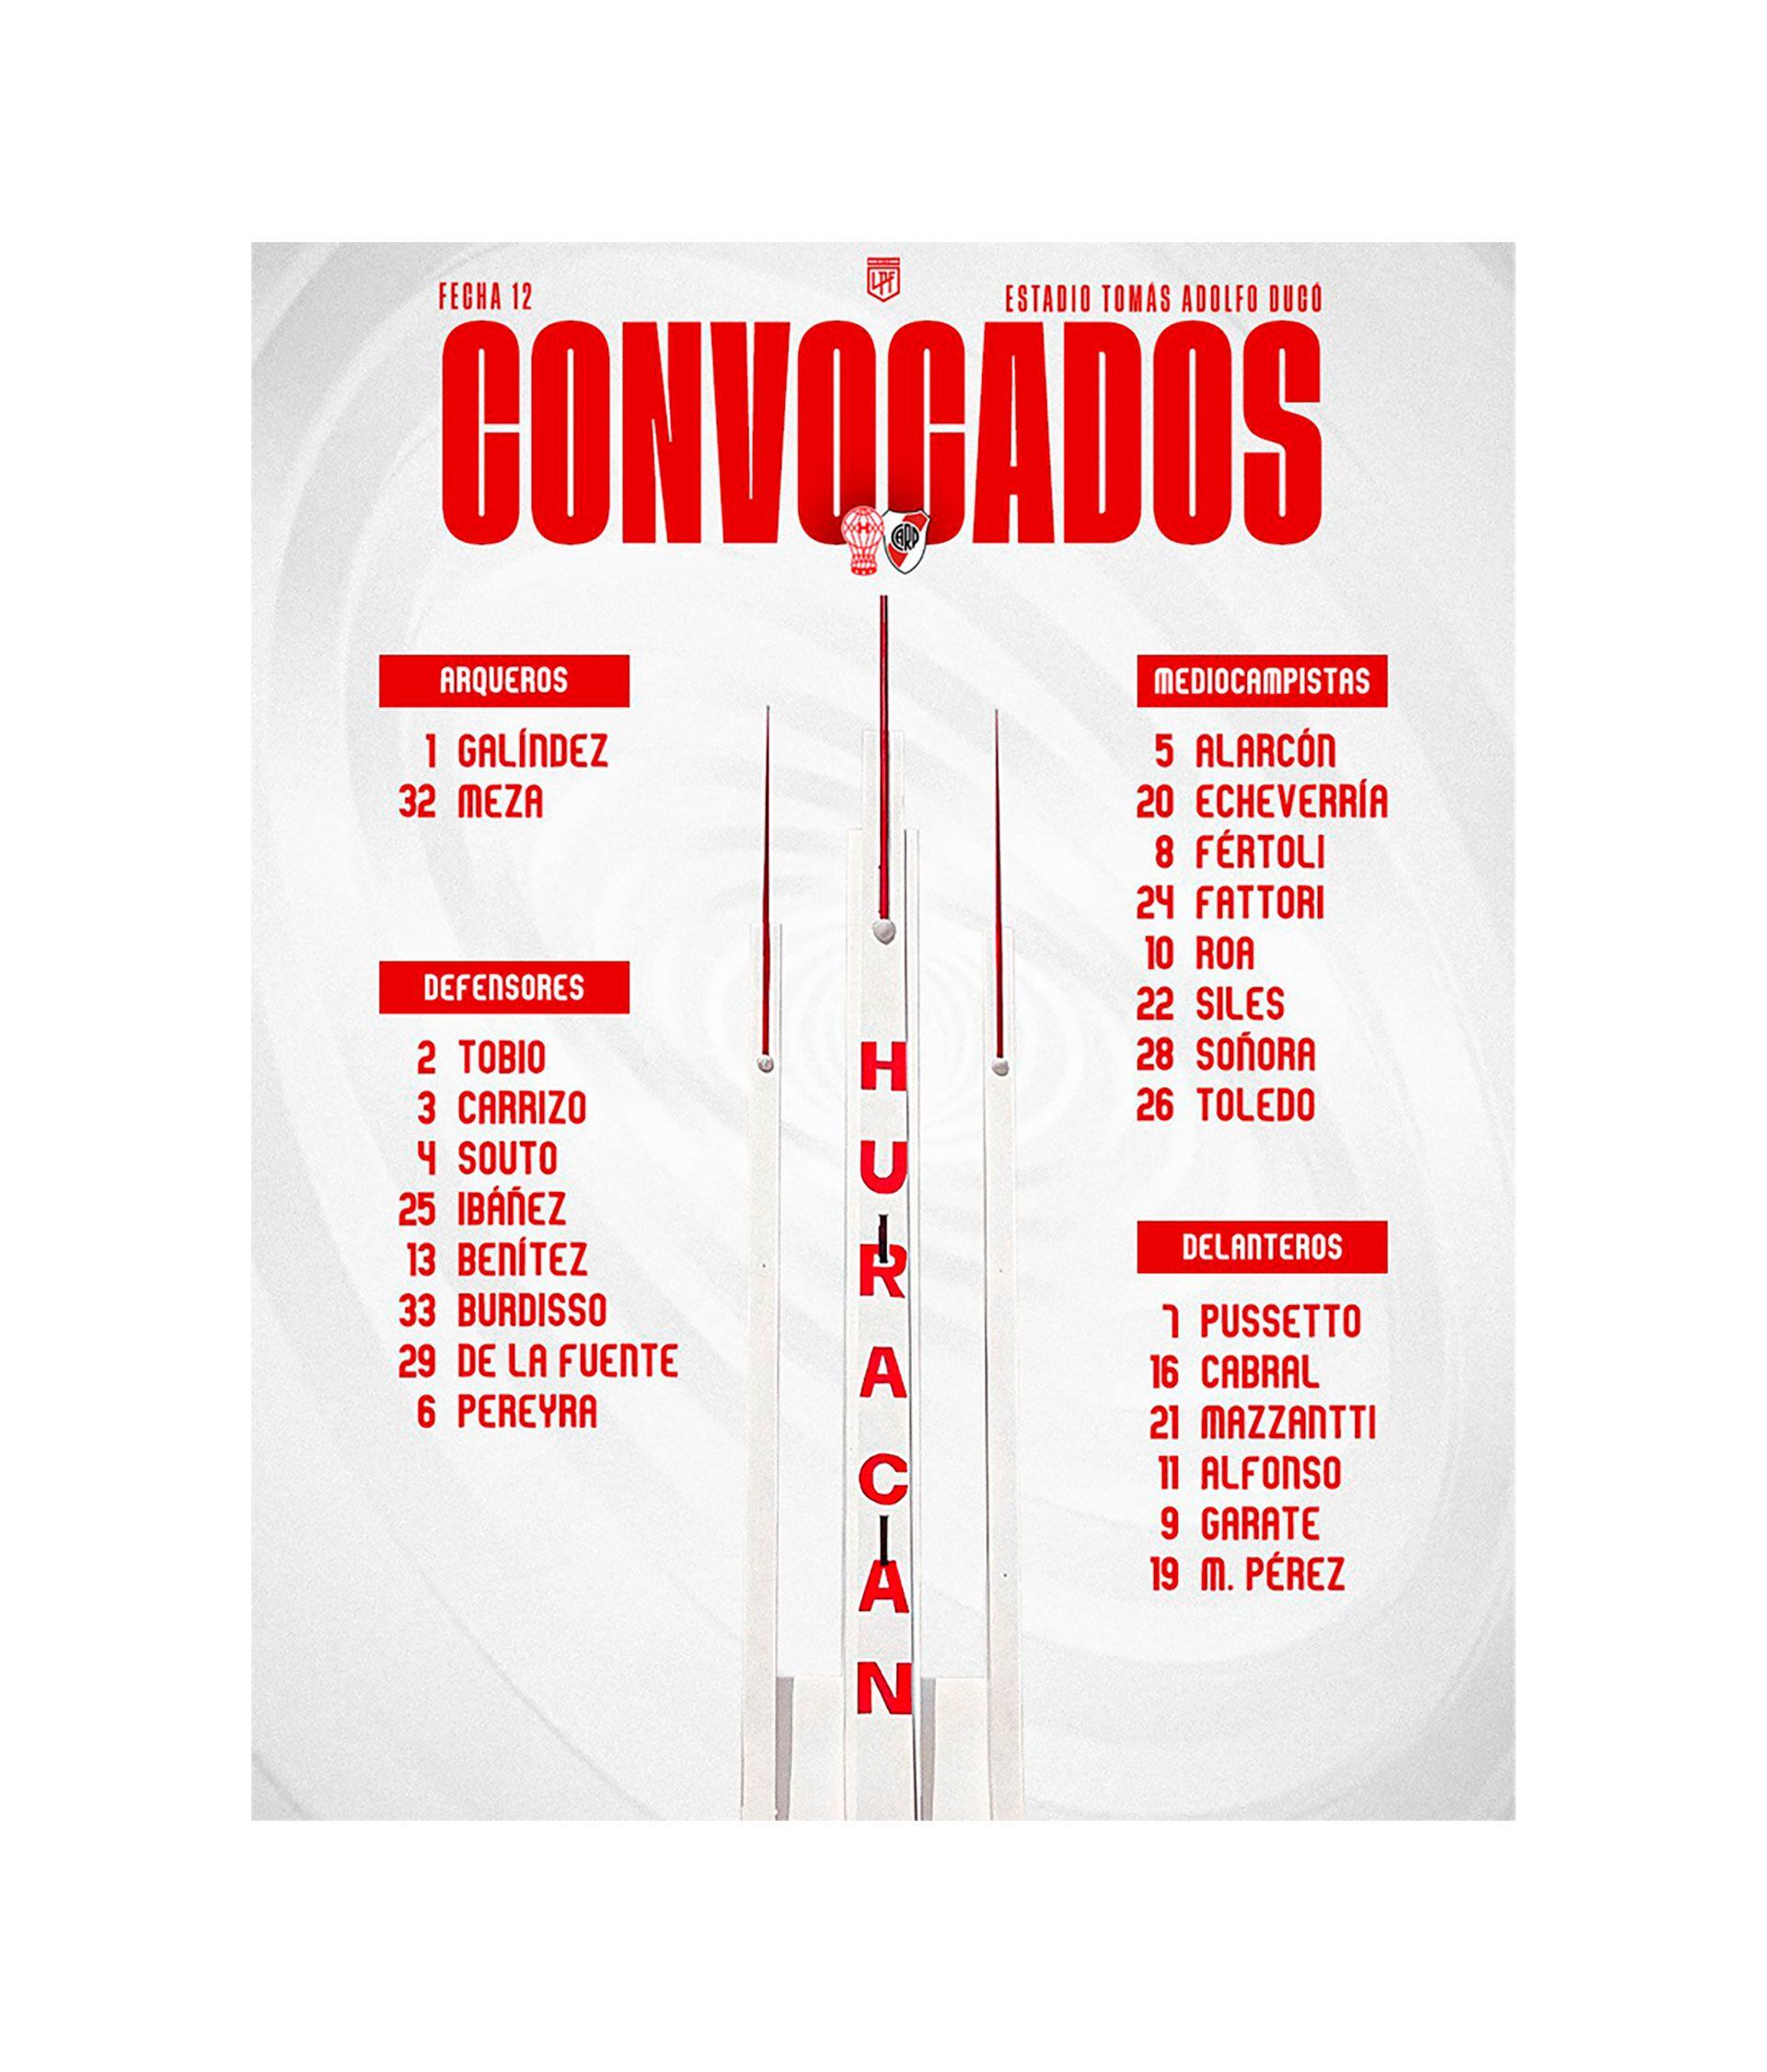 Convocados-Huracan